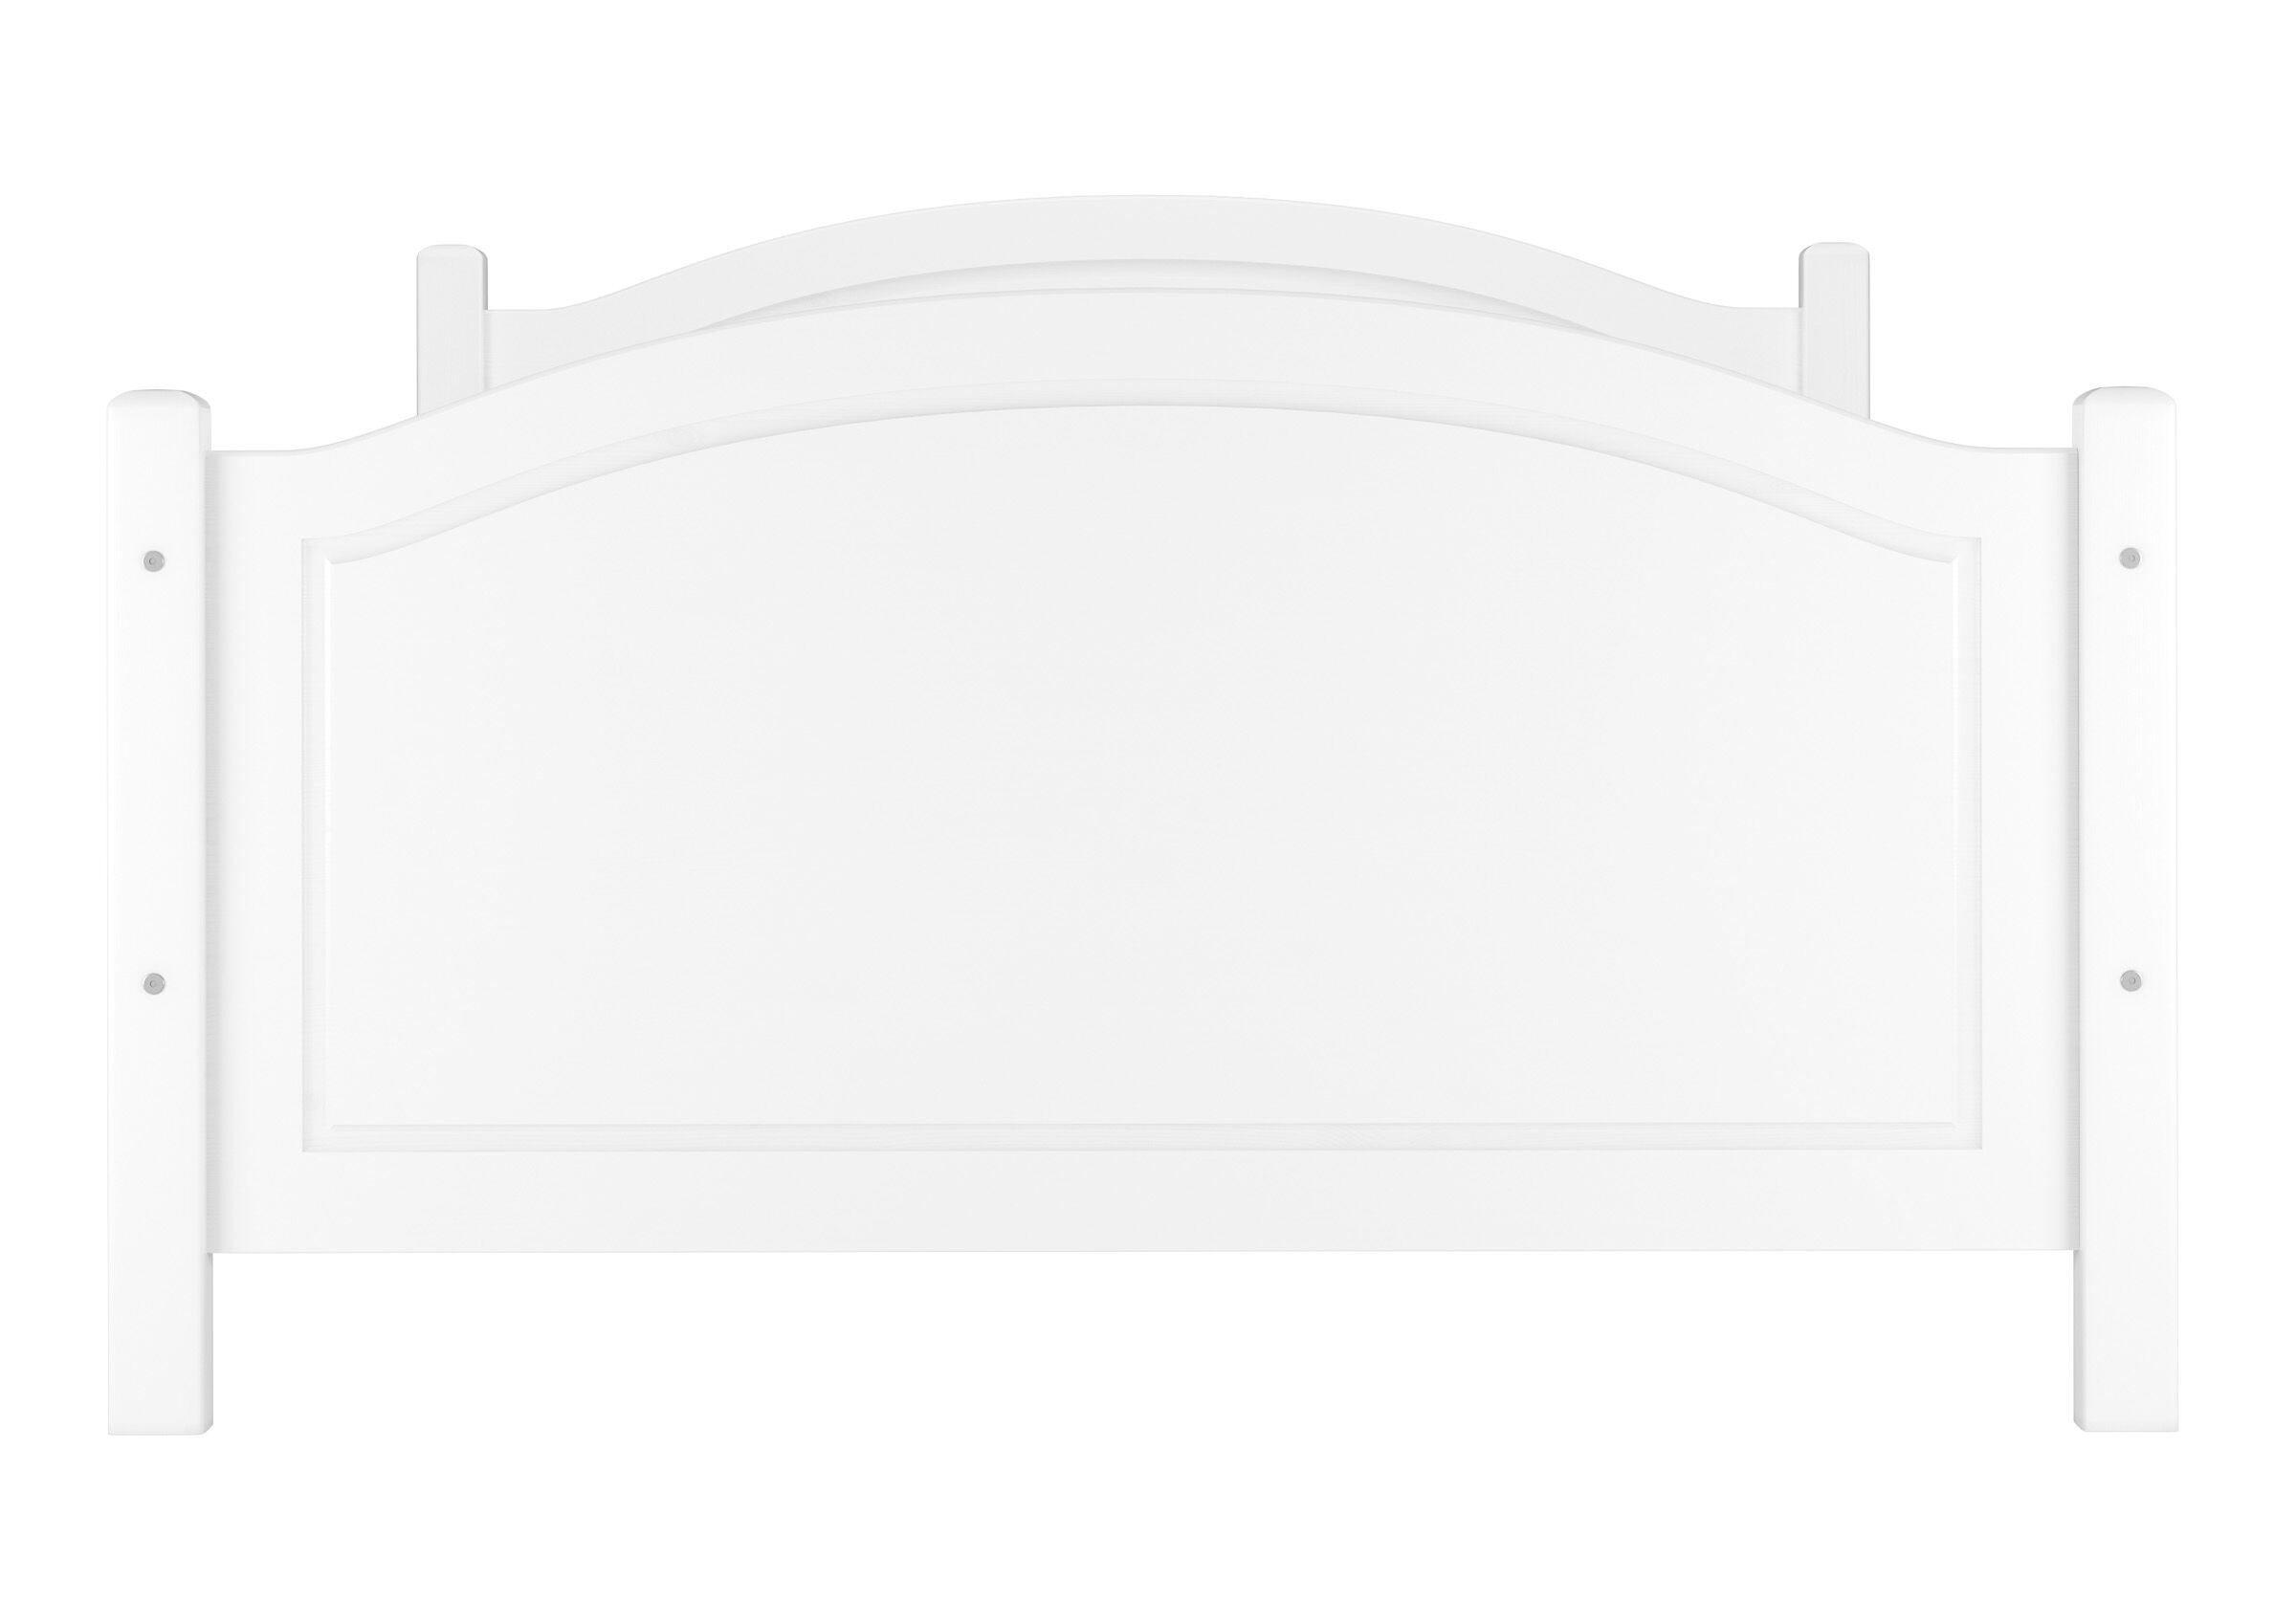 Tre varianti di largo letto classico bianco anche x ANZIANI 120x200 Pino massello V-60.40-12W